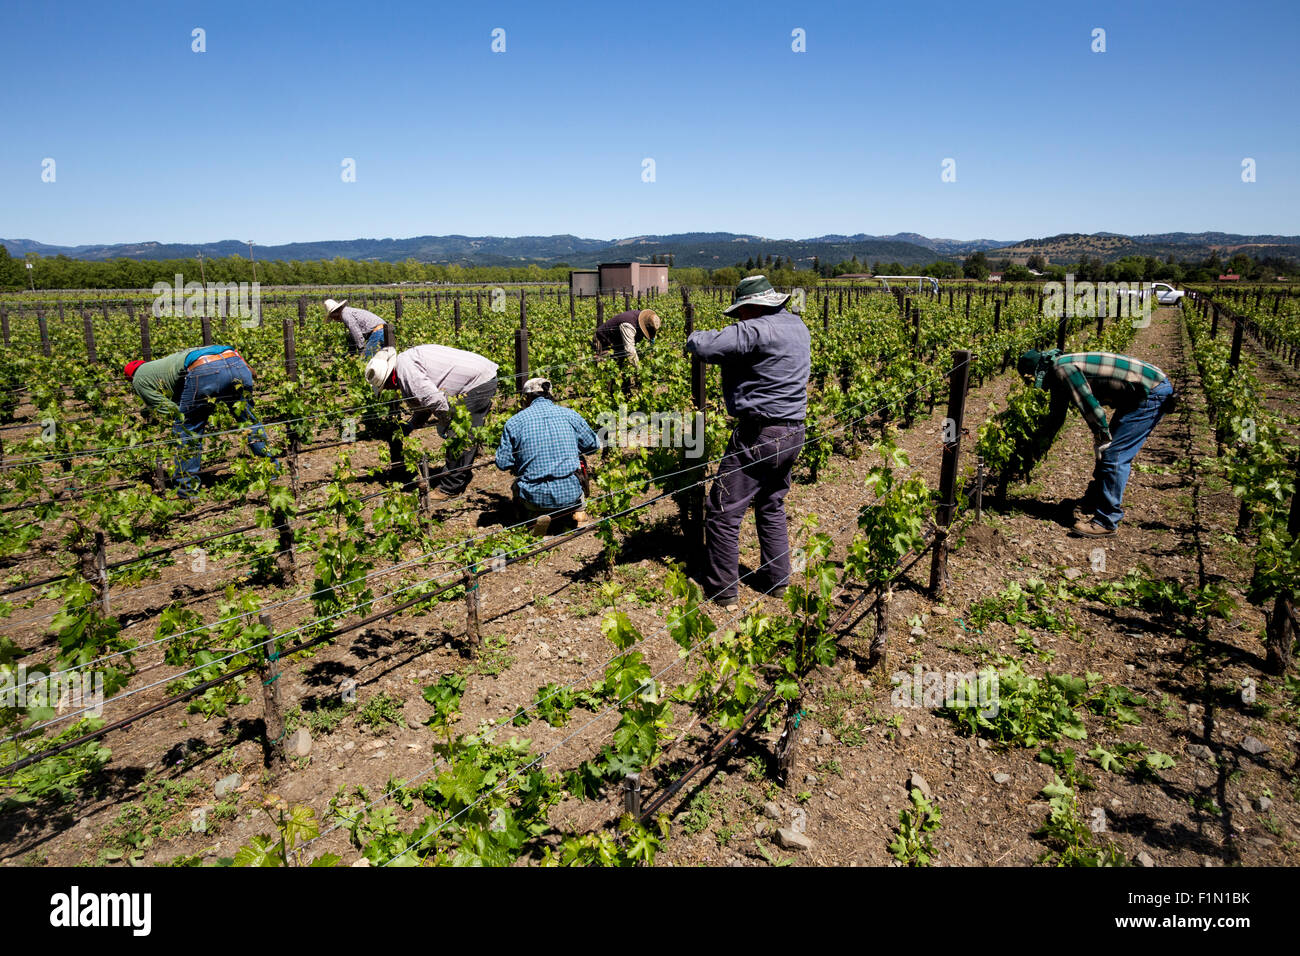 Los trabajadores de bodega, viña y bodega Inglenook, Rutherford, Napa Valley, el condado de Napa, California, Estados Unidos, América del Norte Foto de stock